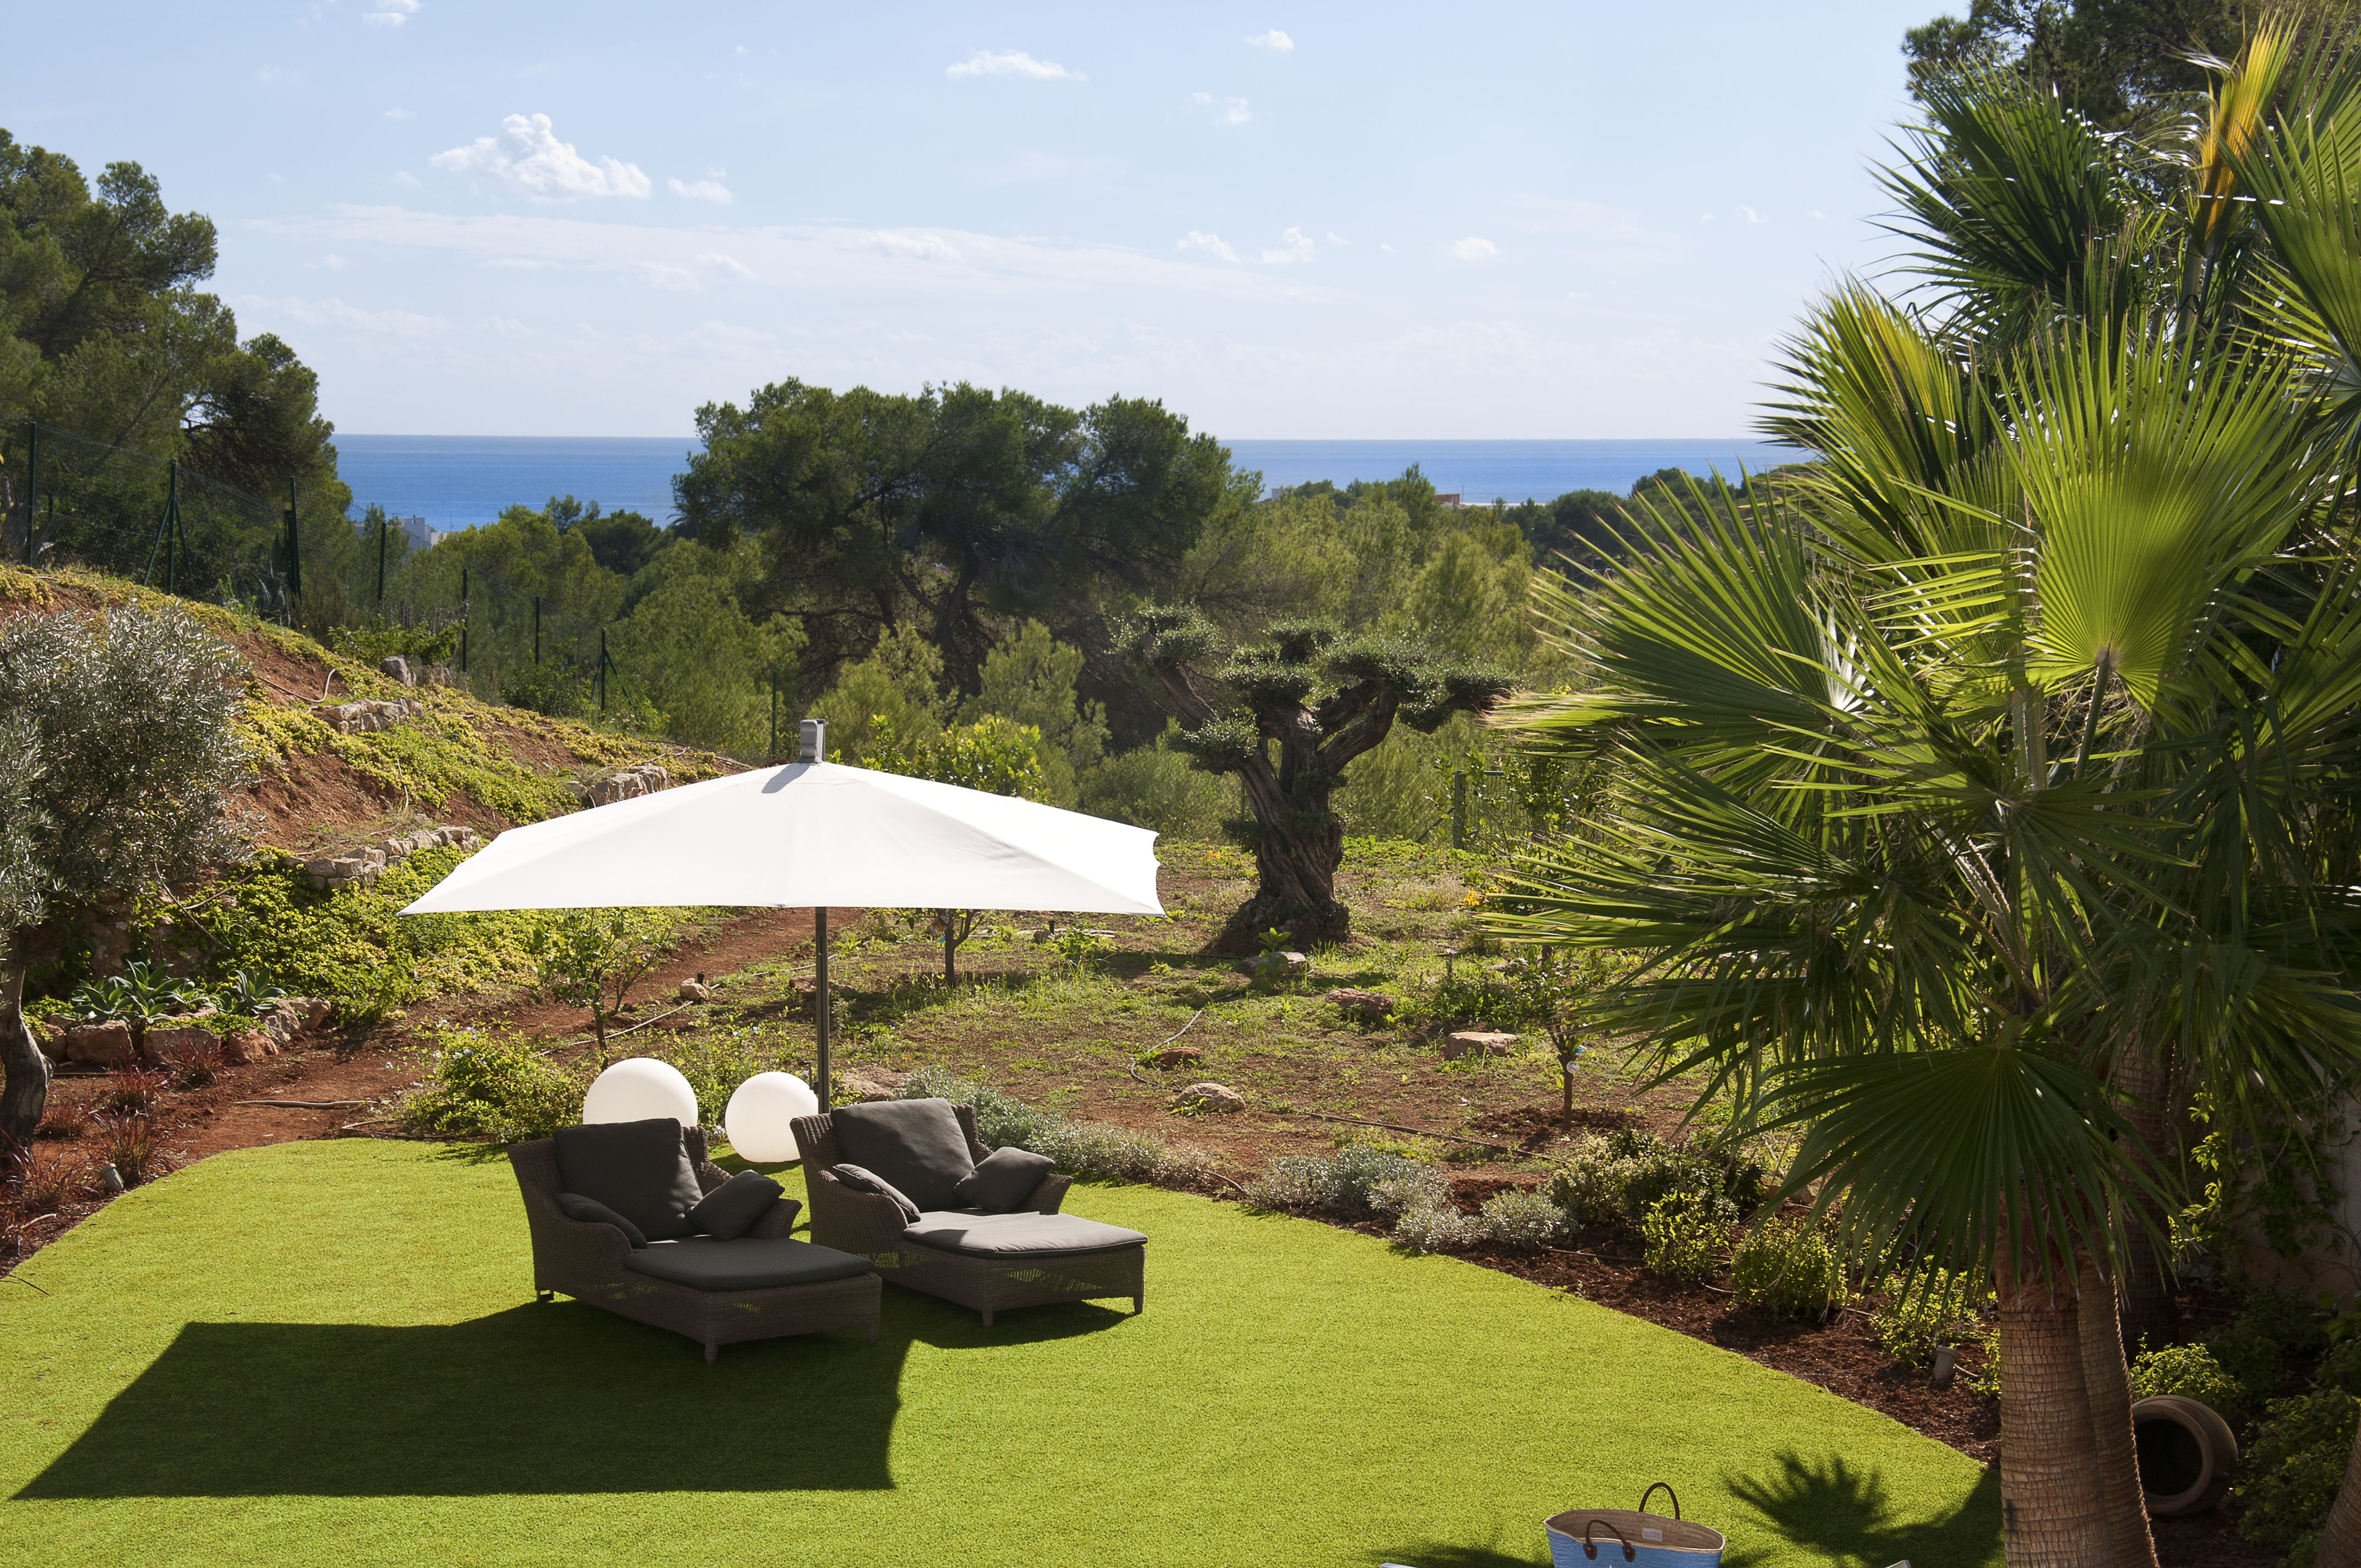 Vacaciones inolvidables con Engel & Völkers en Ibiza: alquile elegantes villas hasta un 30% más baratas